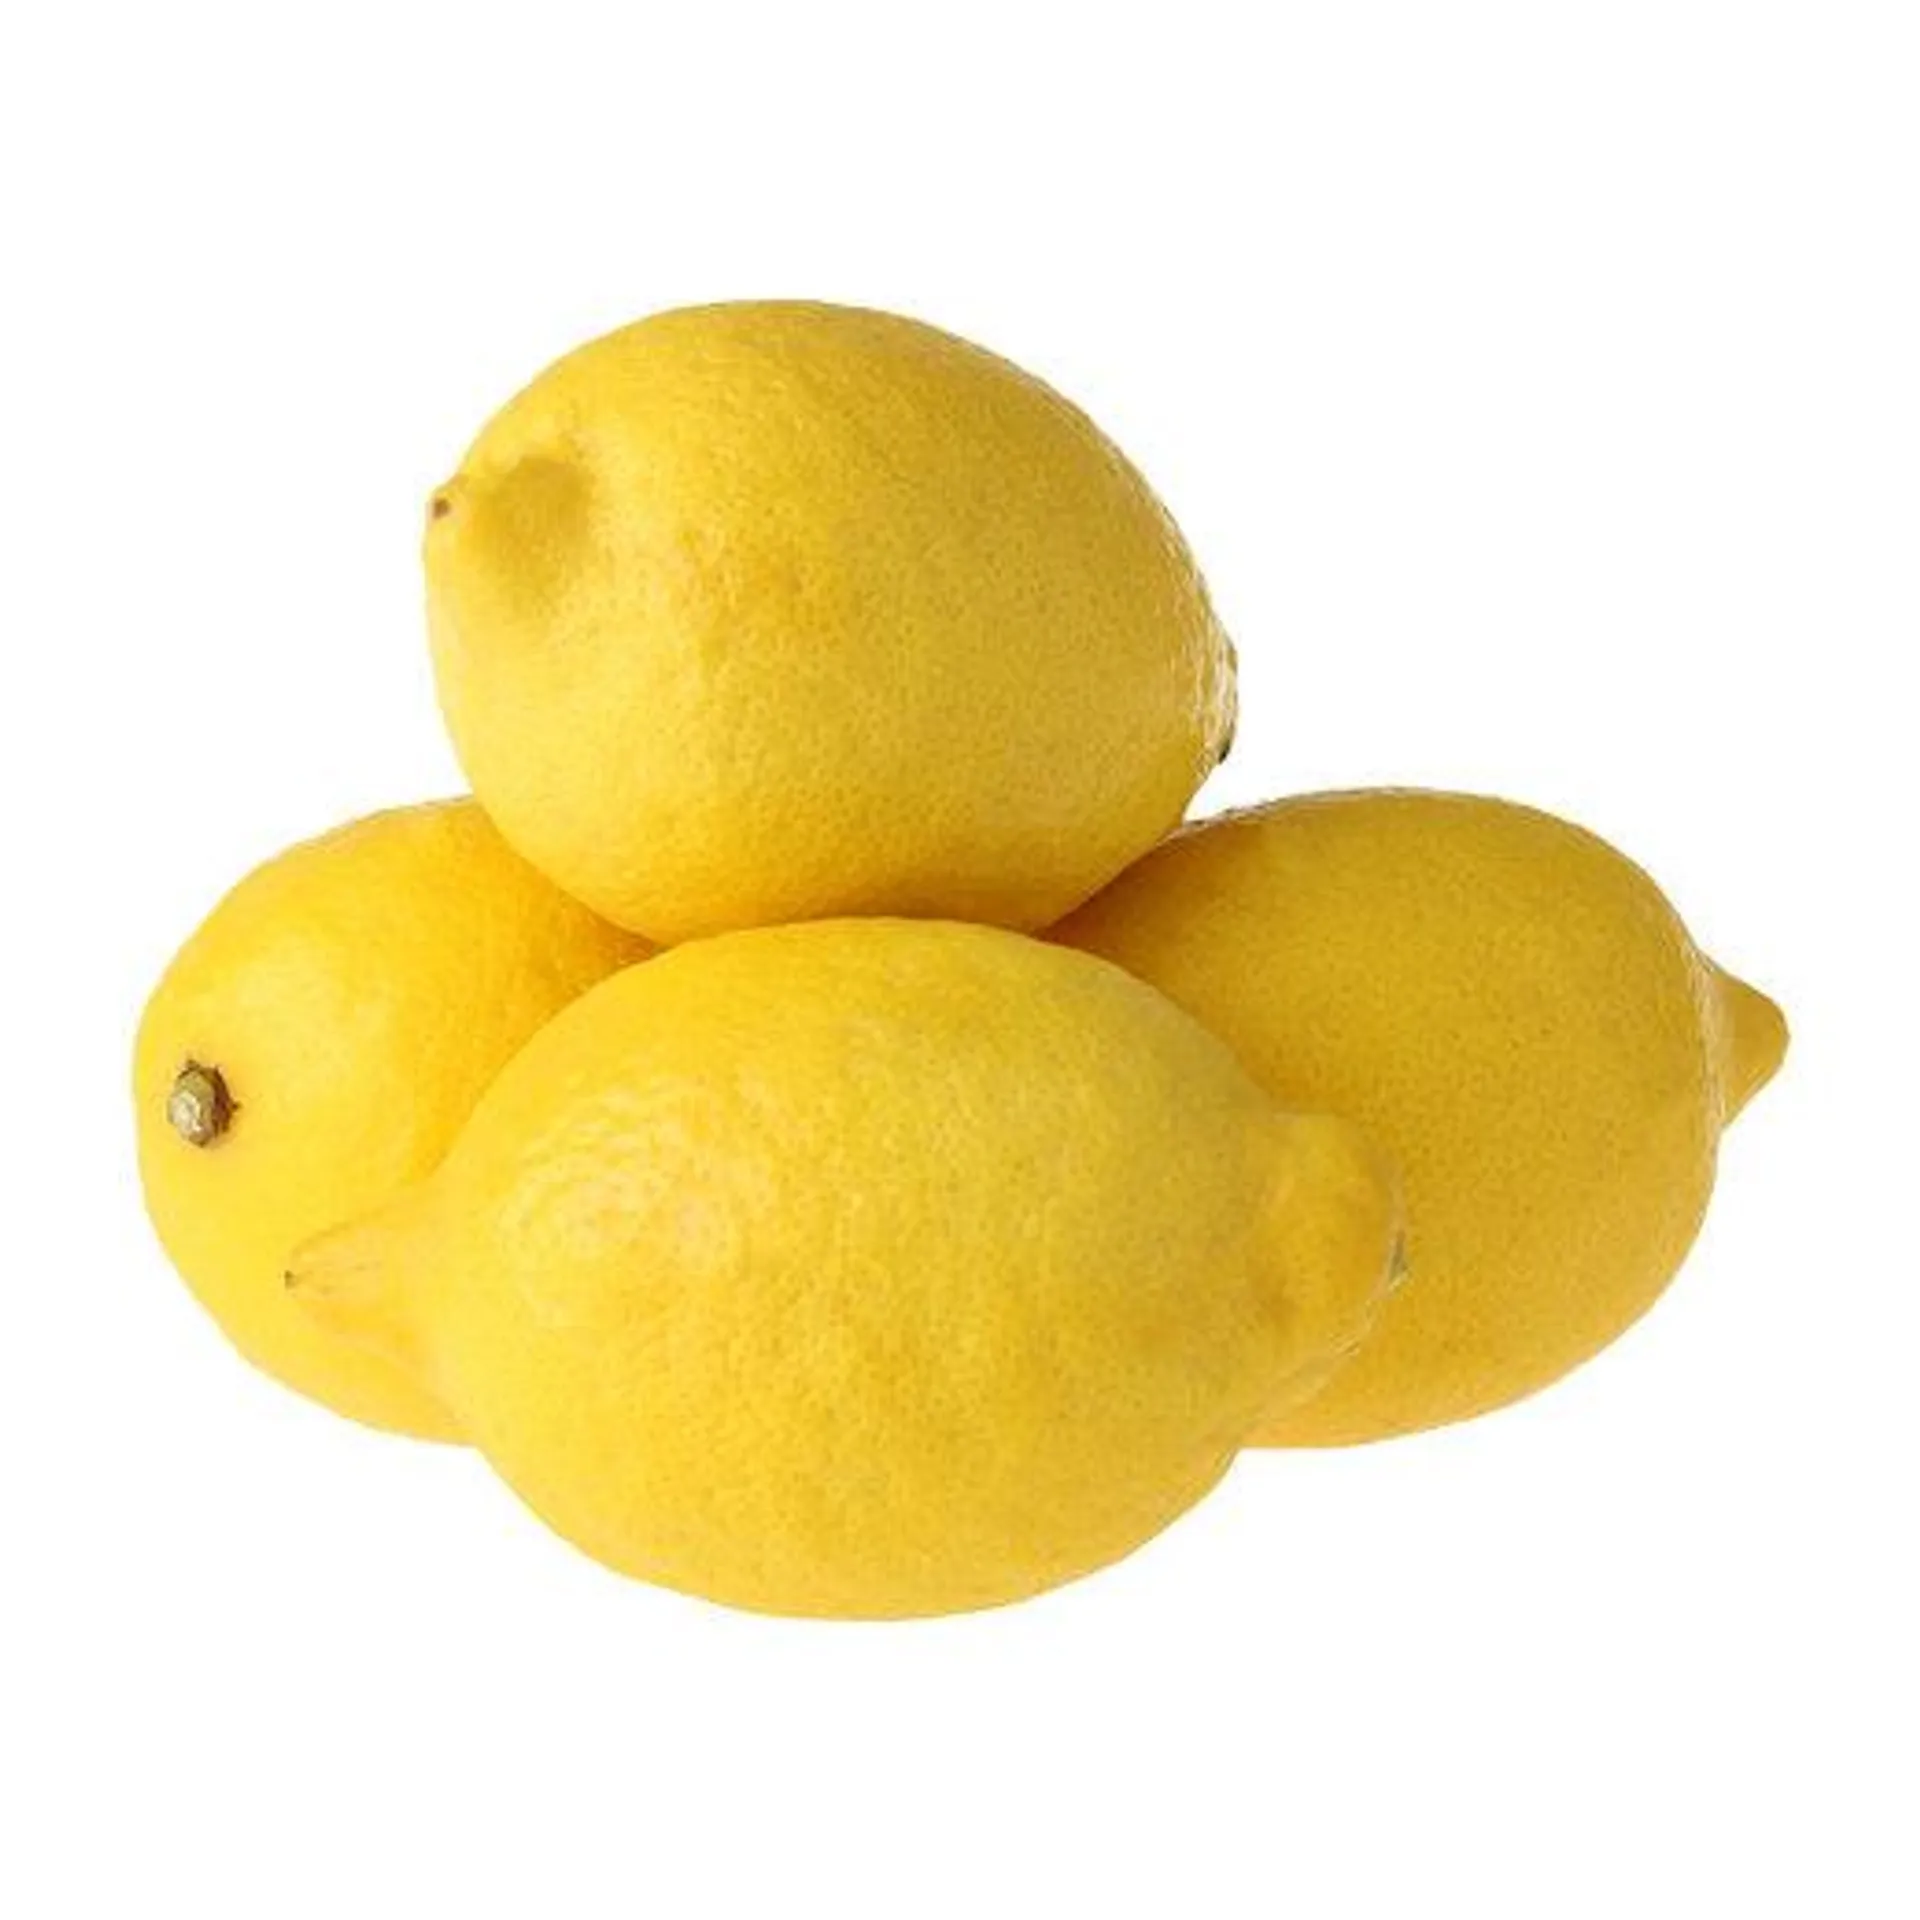 Limon Enter